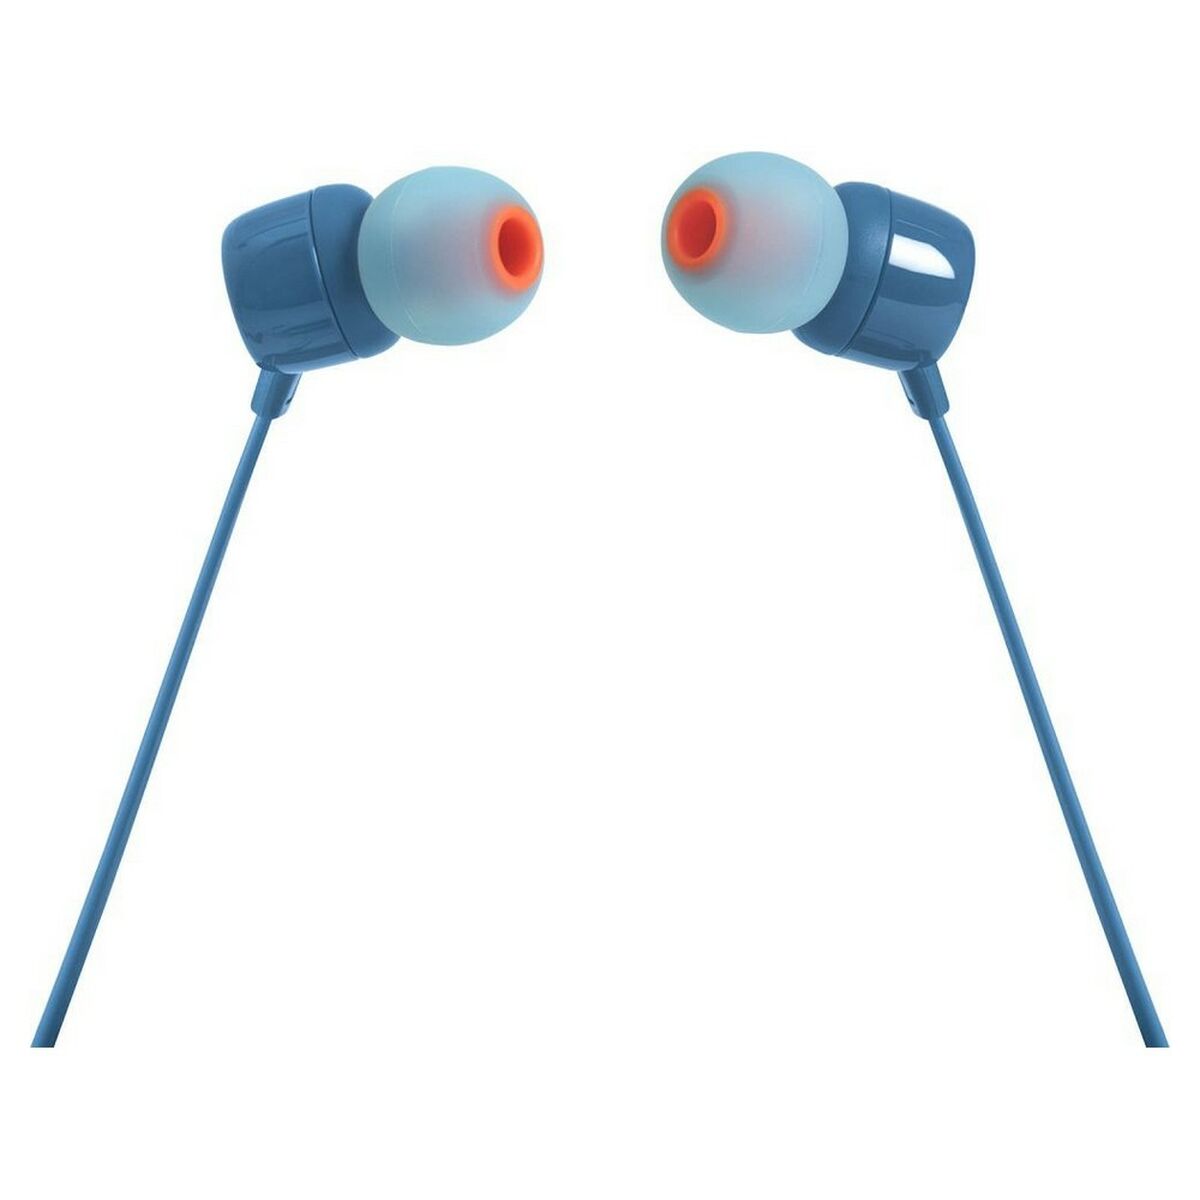 Kopfhörer mit Mikrofon JBL T110 Blau